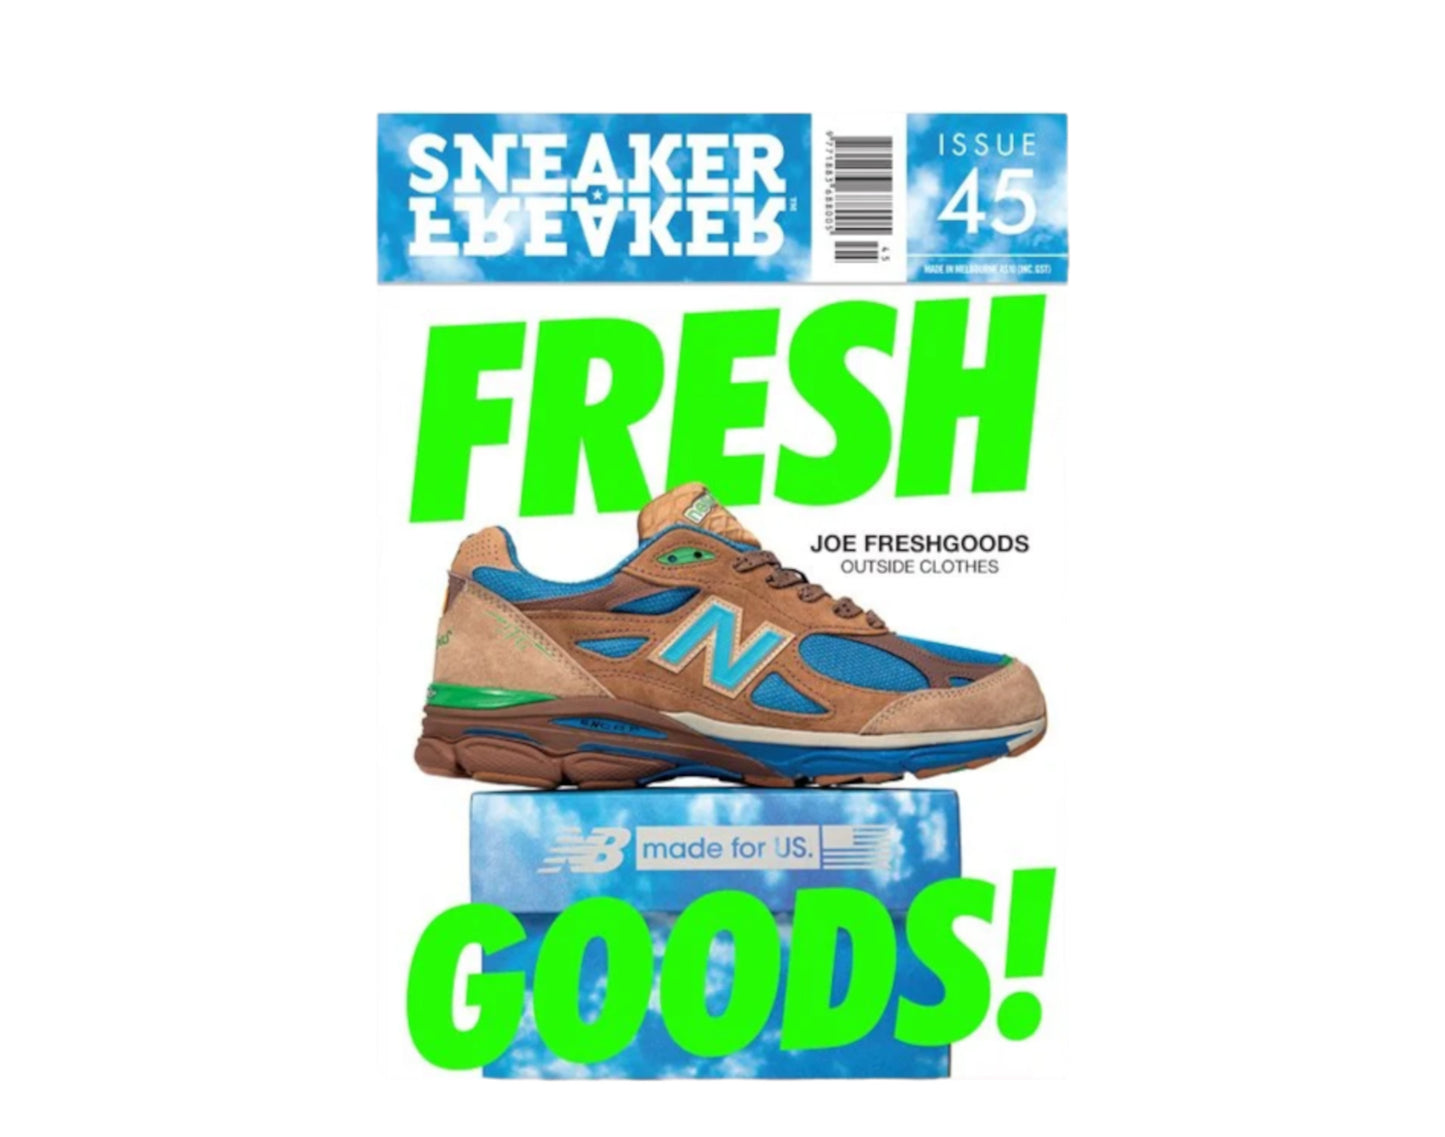 Sneaker Freaker Magazine Issue # 45 - Joe Freshgoods - New Balance Cover